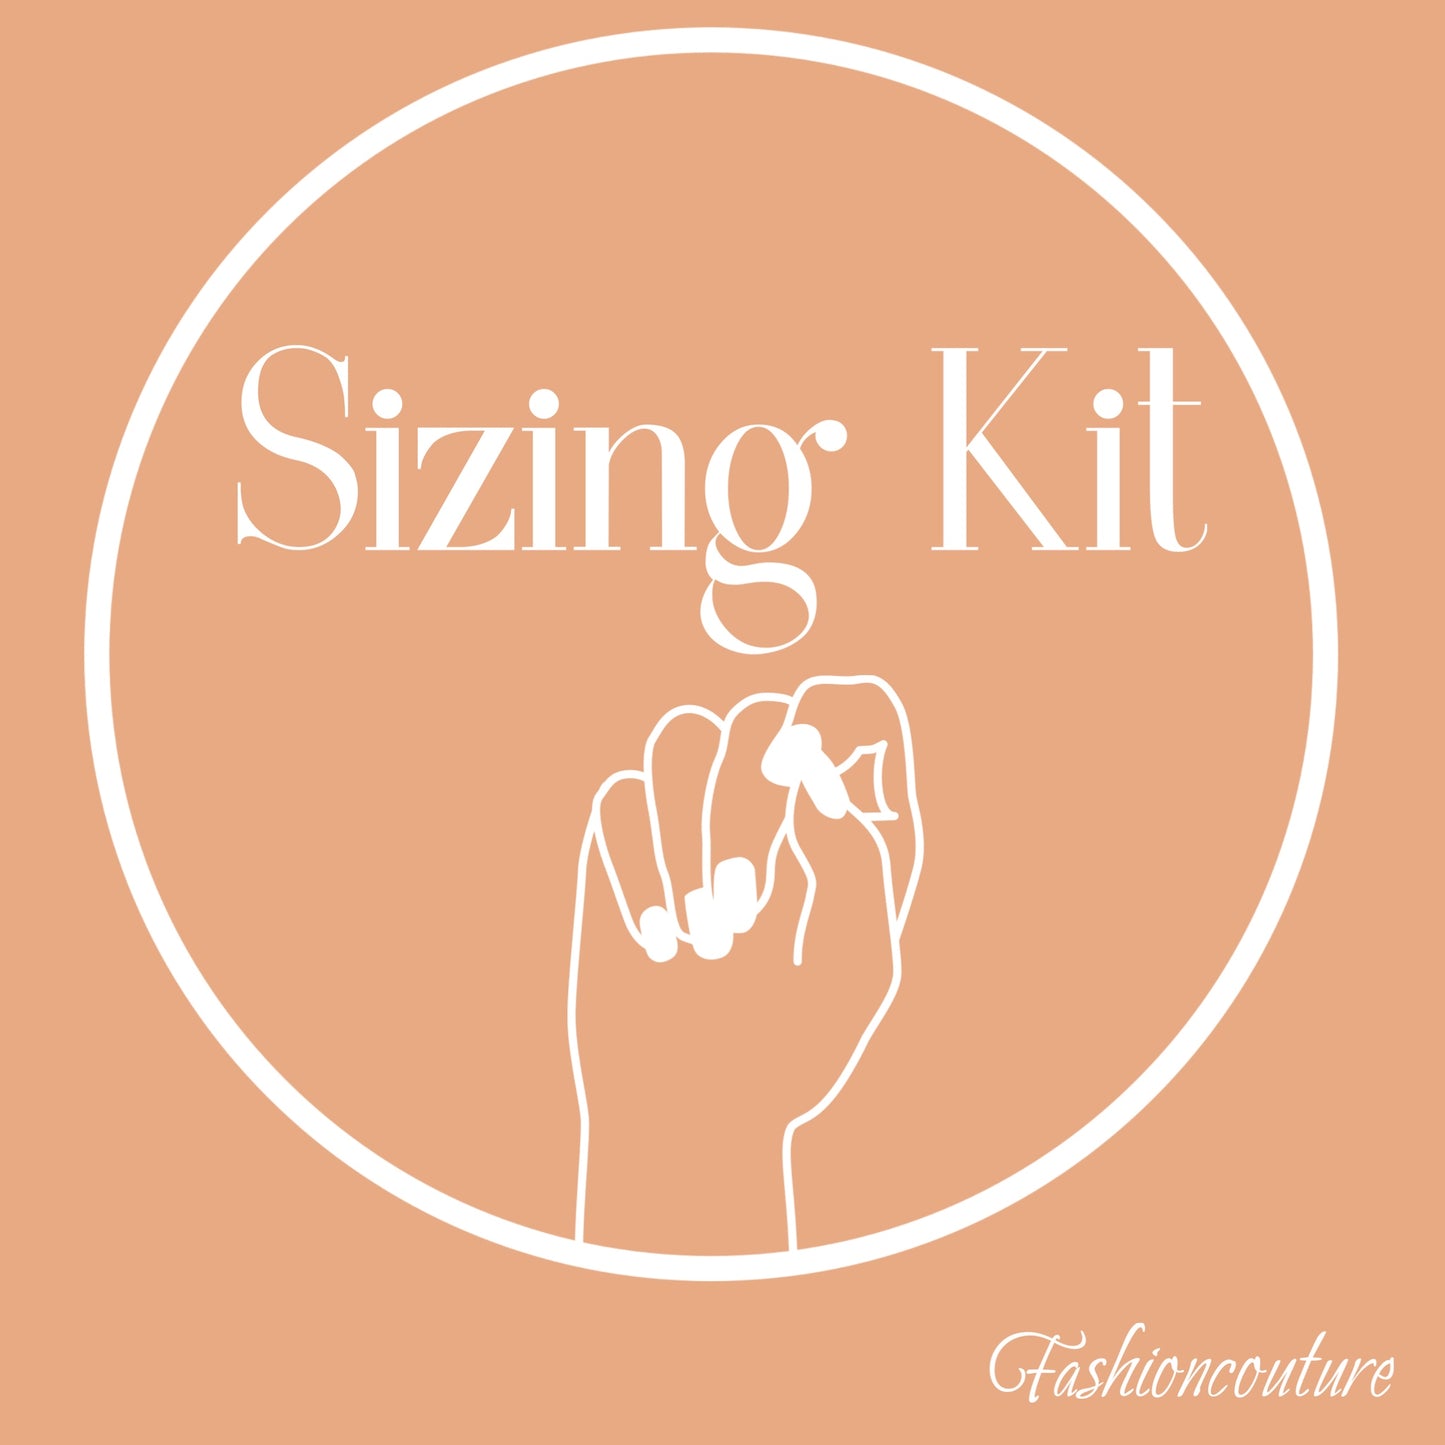 Sizing kit